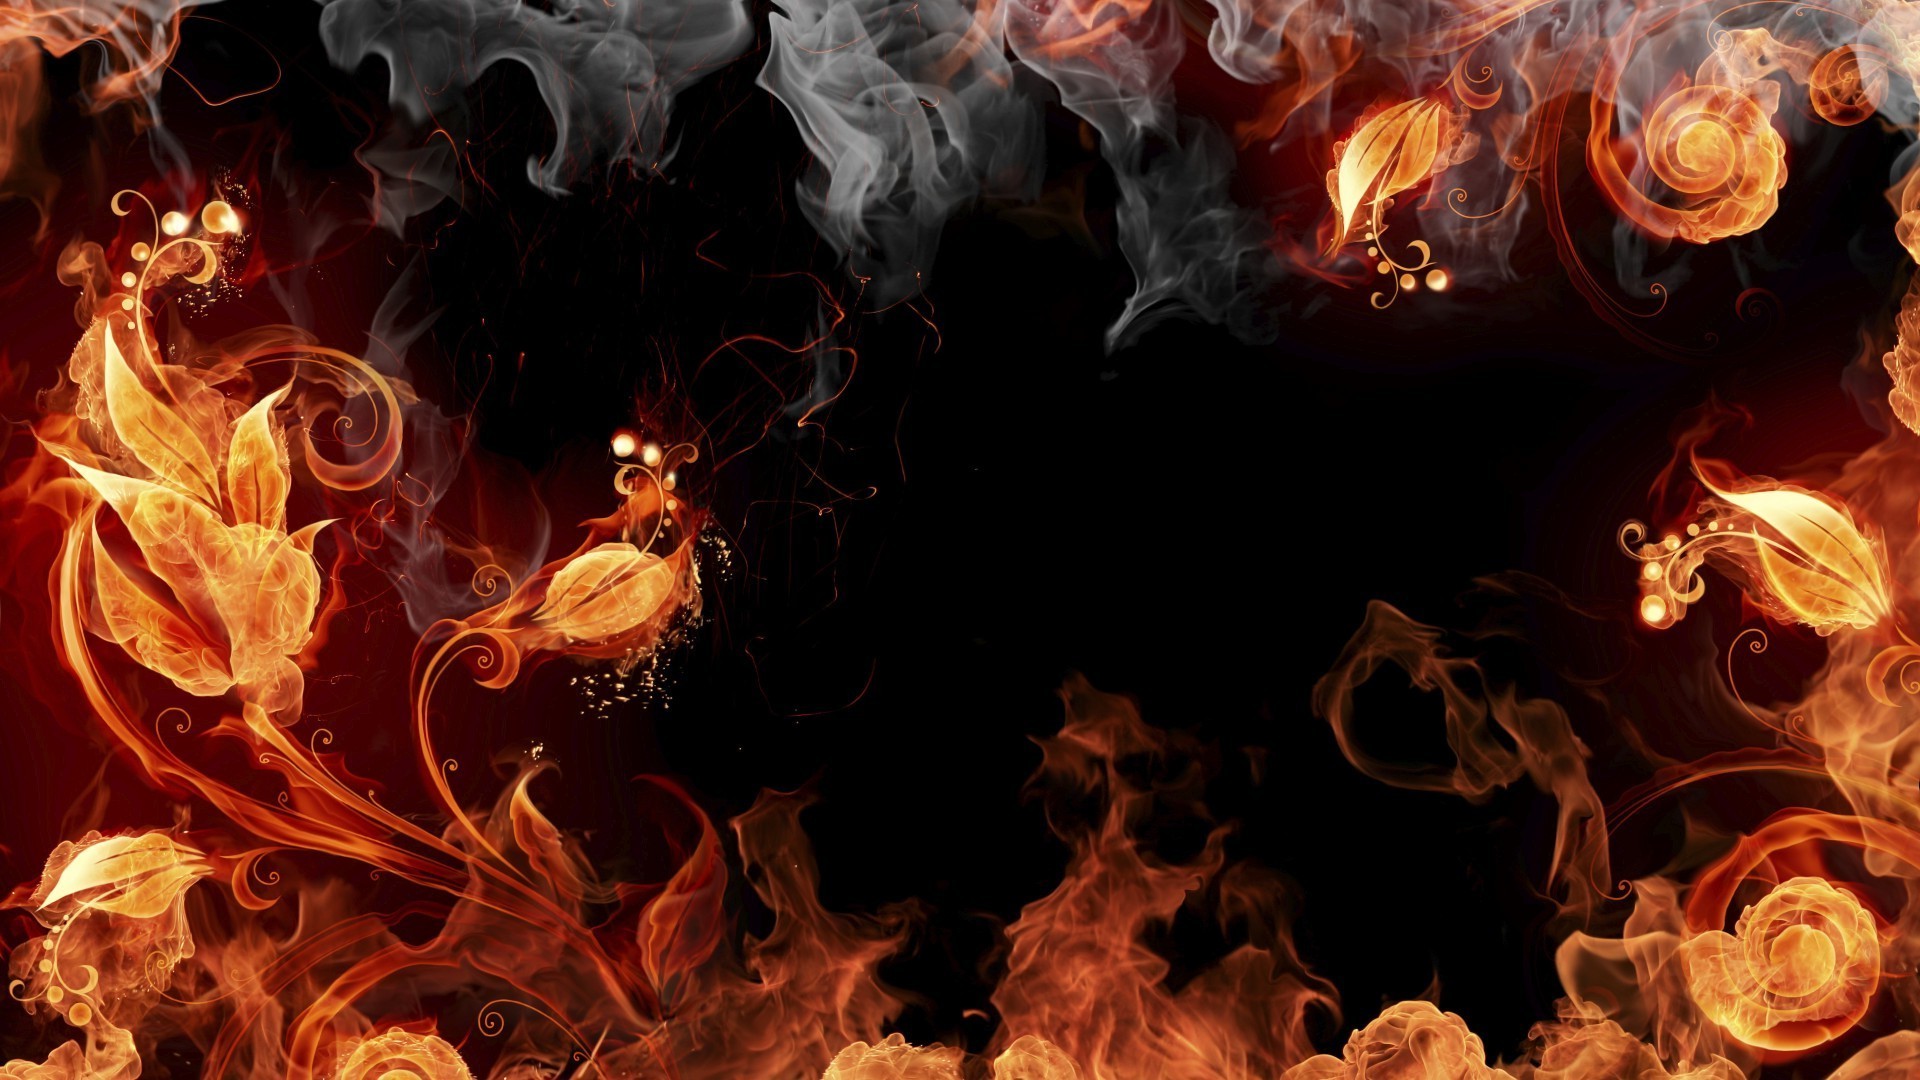 текстуры пламя тепло тепло сожгли горячая энергии камин костер блейз дым опасность сжечь аннотация костра люминесценция свет легковоспламеняющиеся зажечь